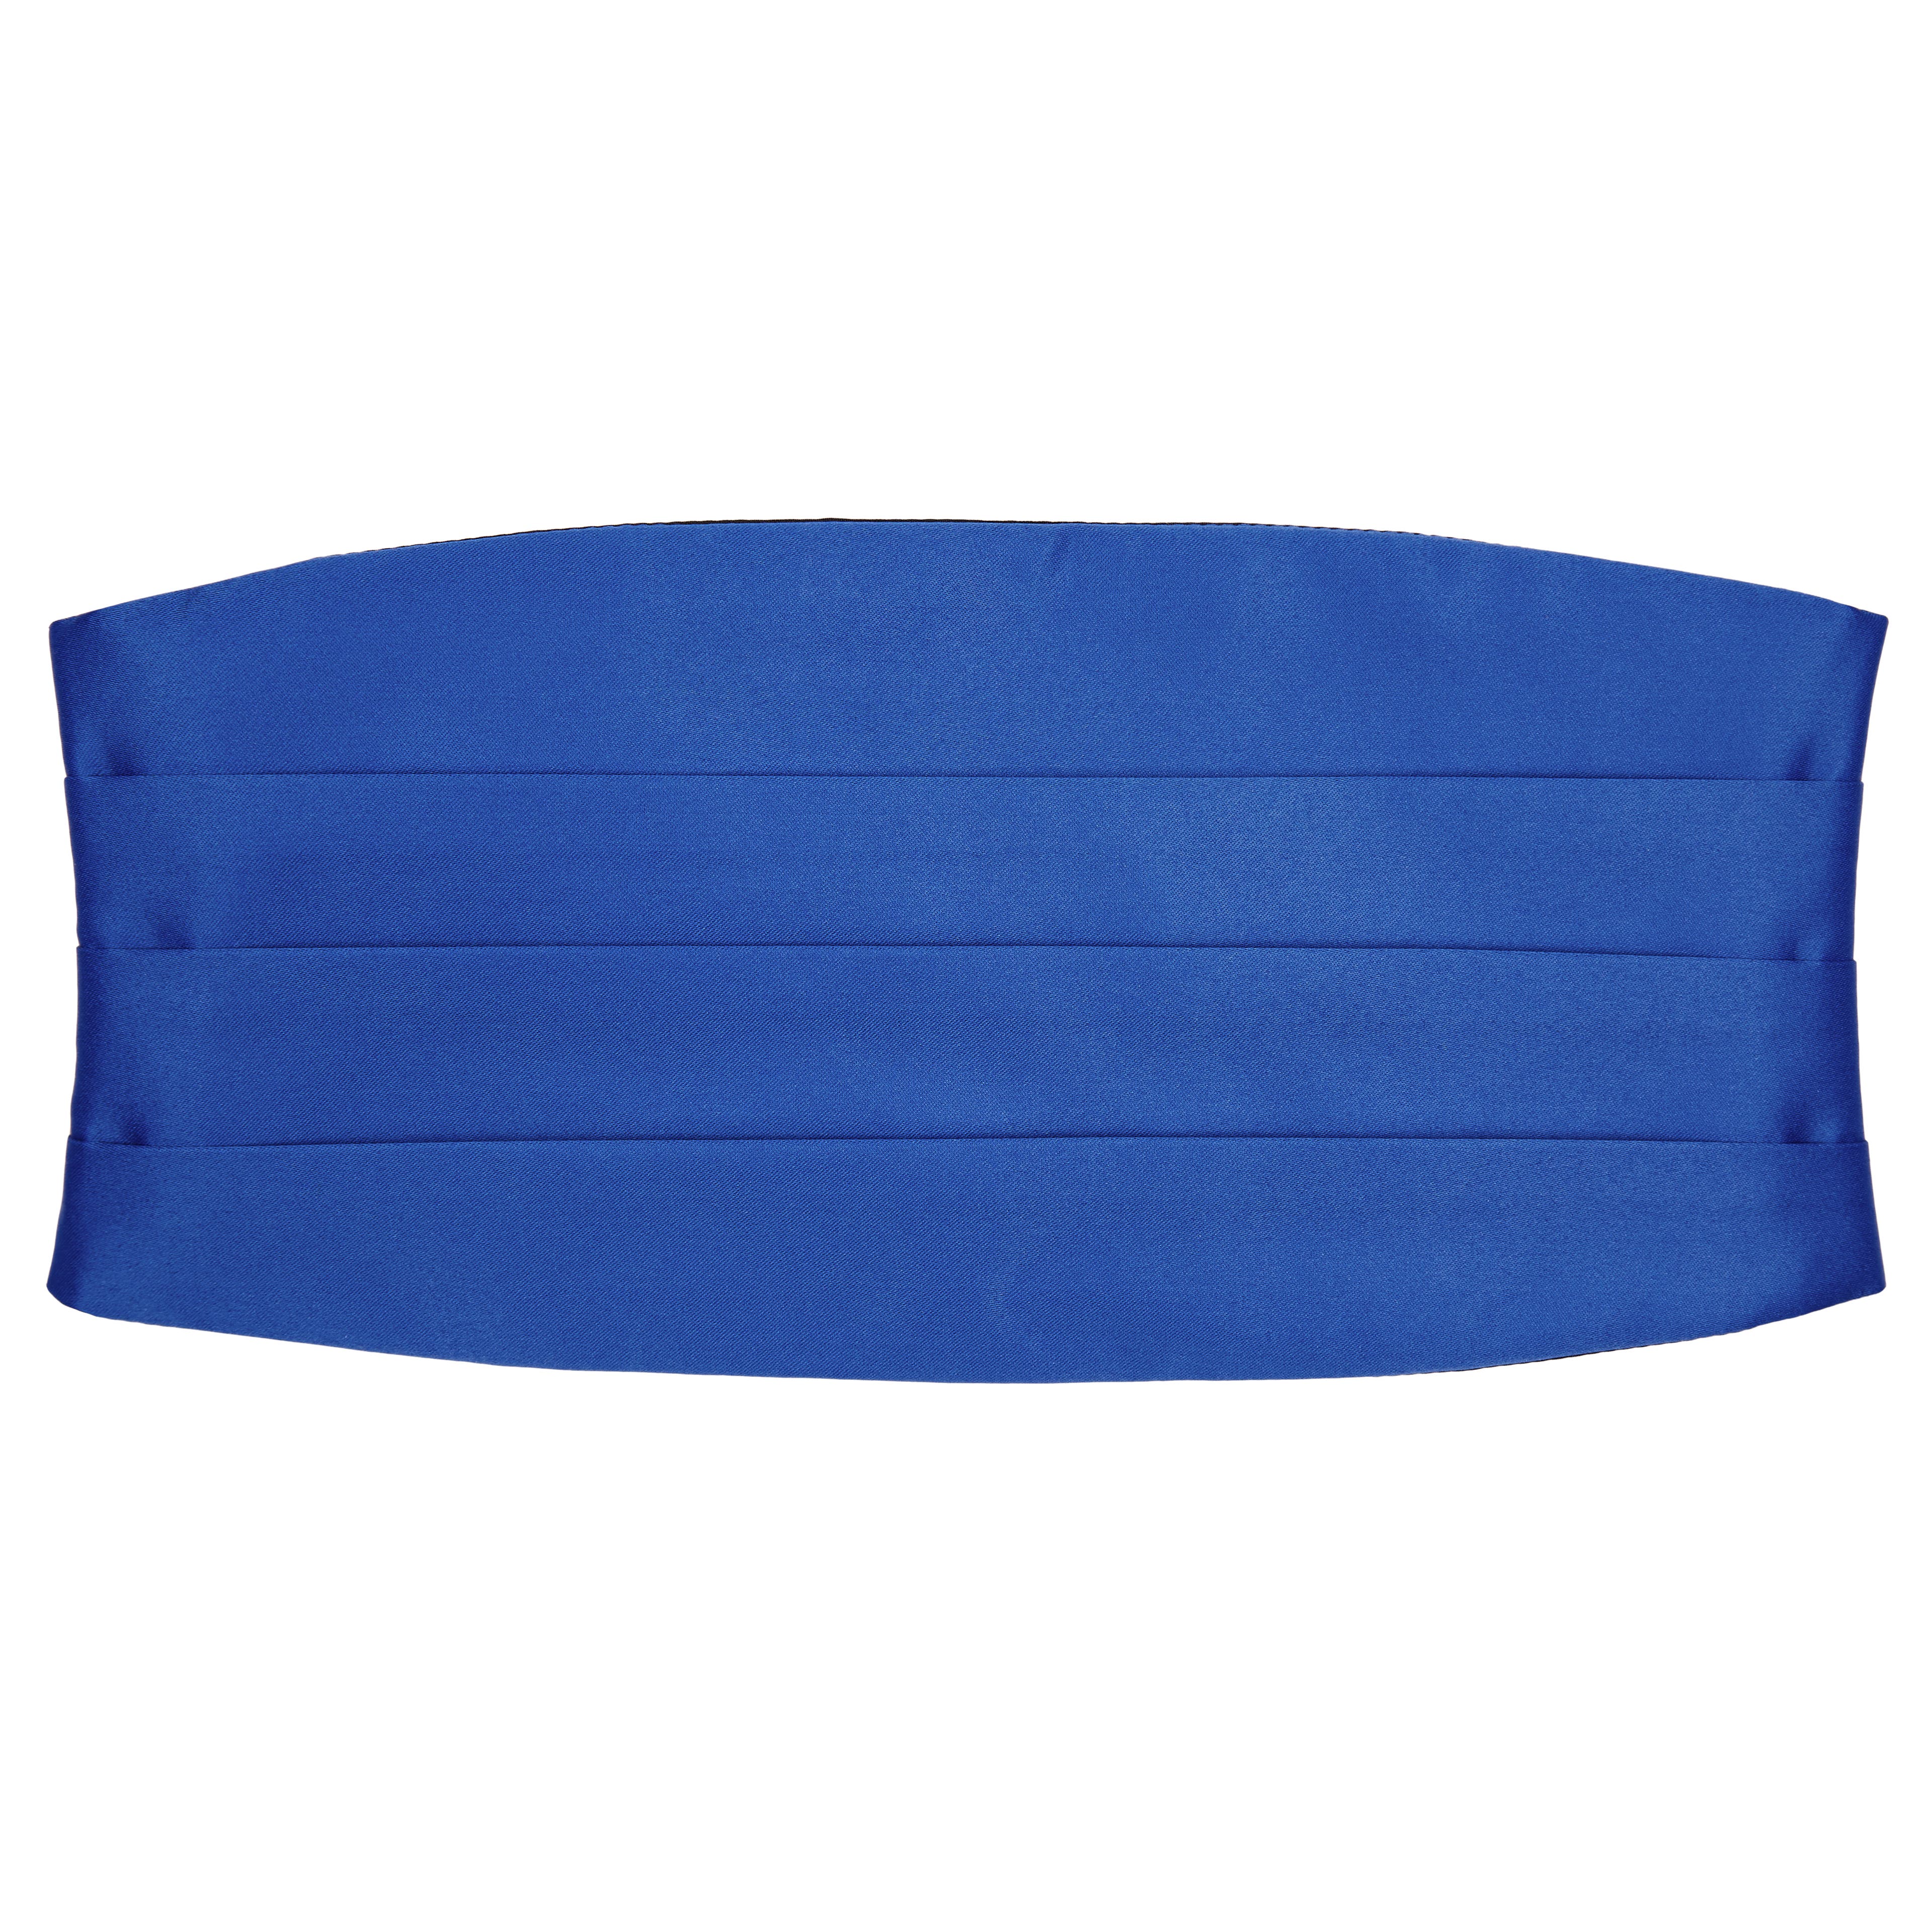 Základná šerpa v modrej farbe